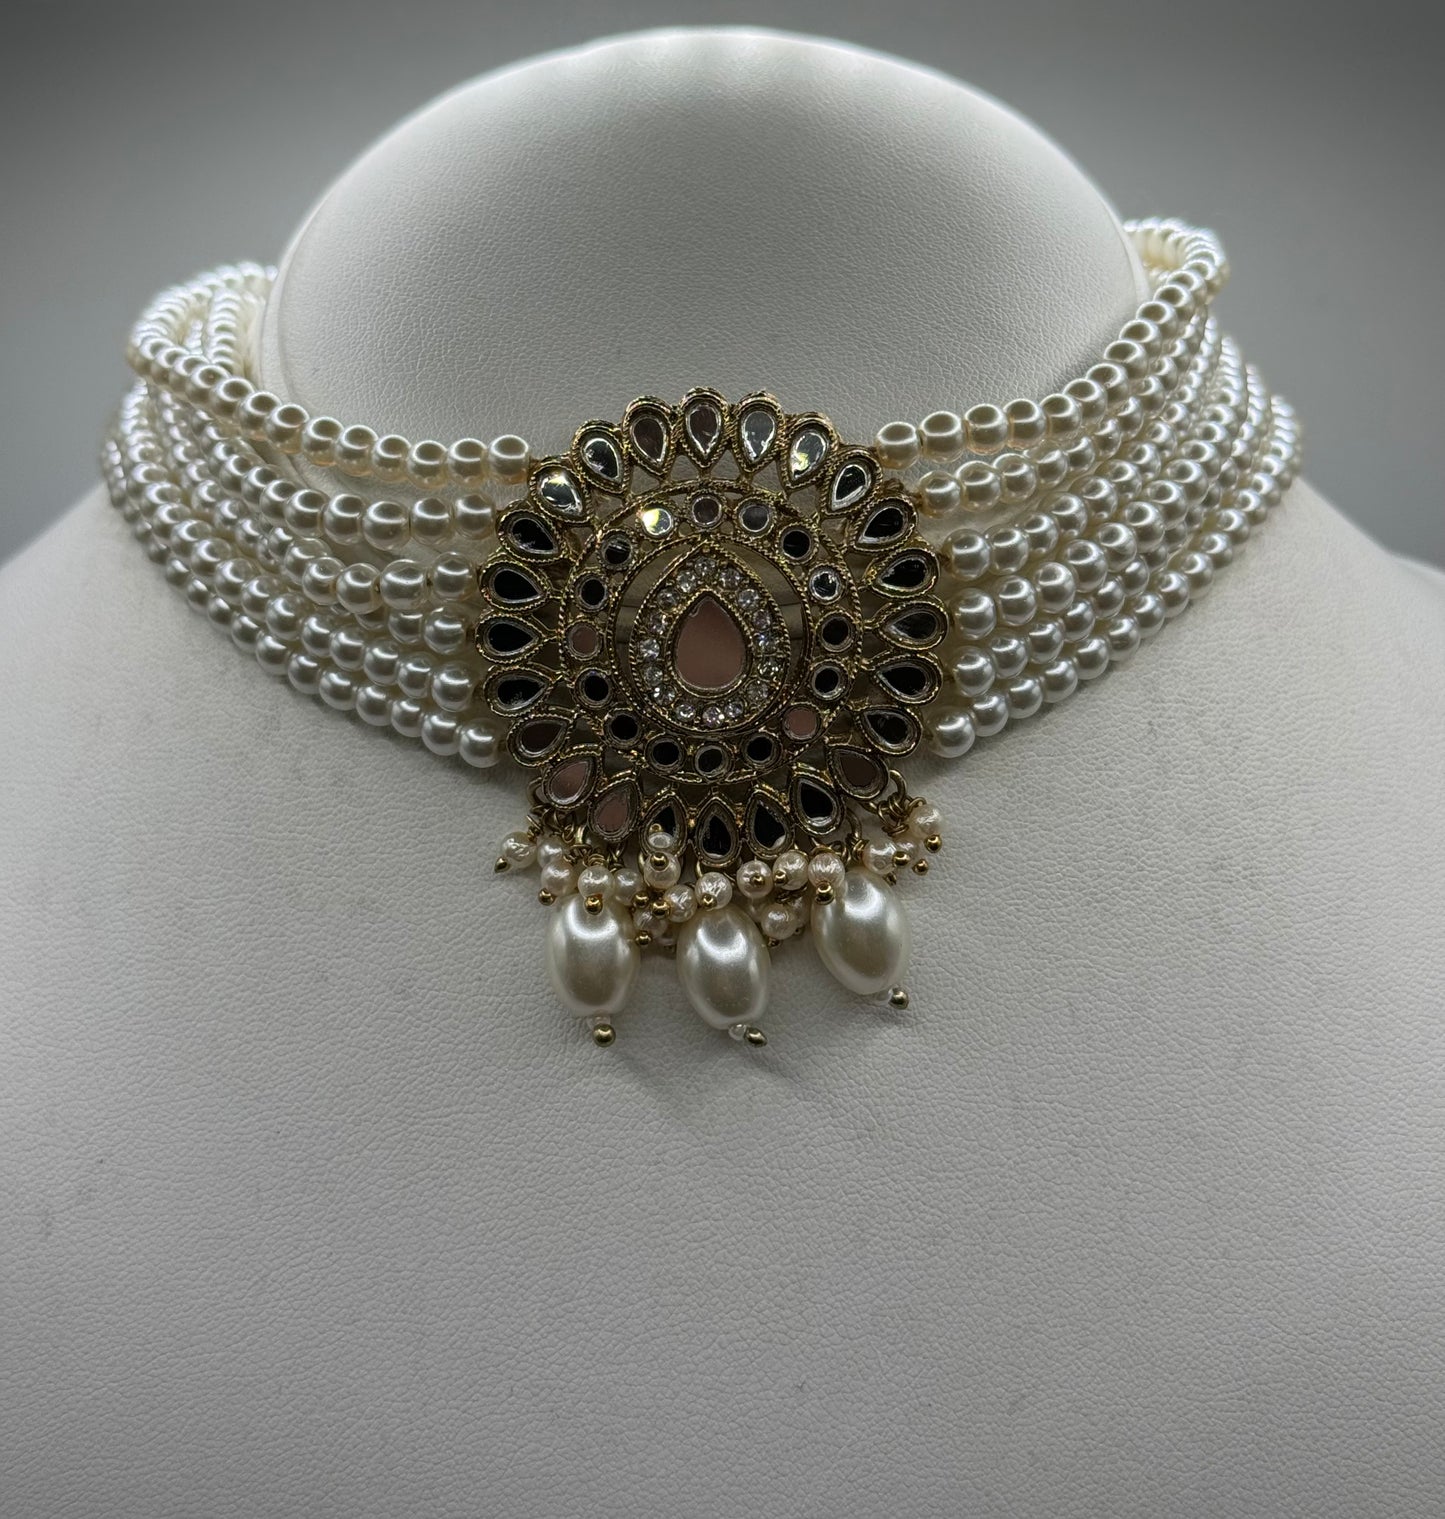 Shania necklace set